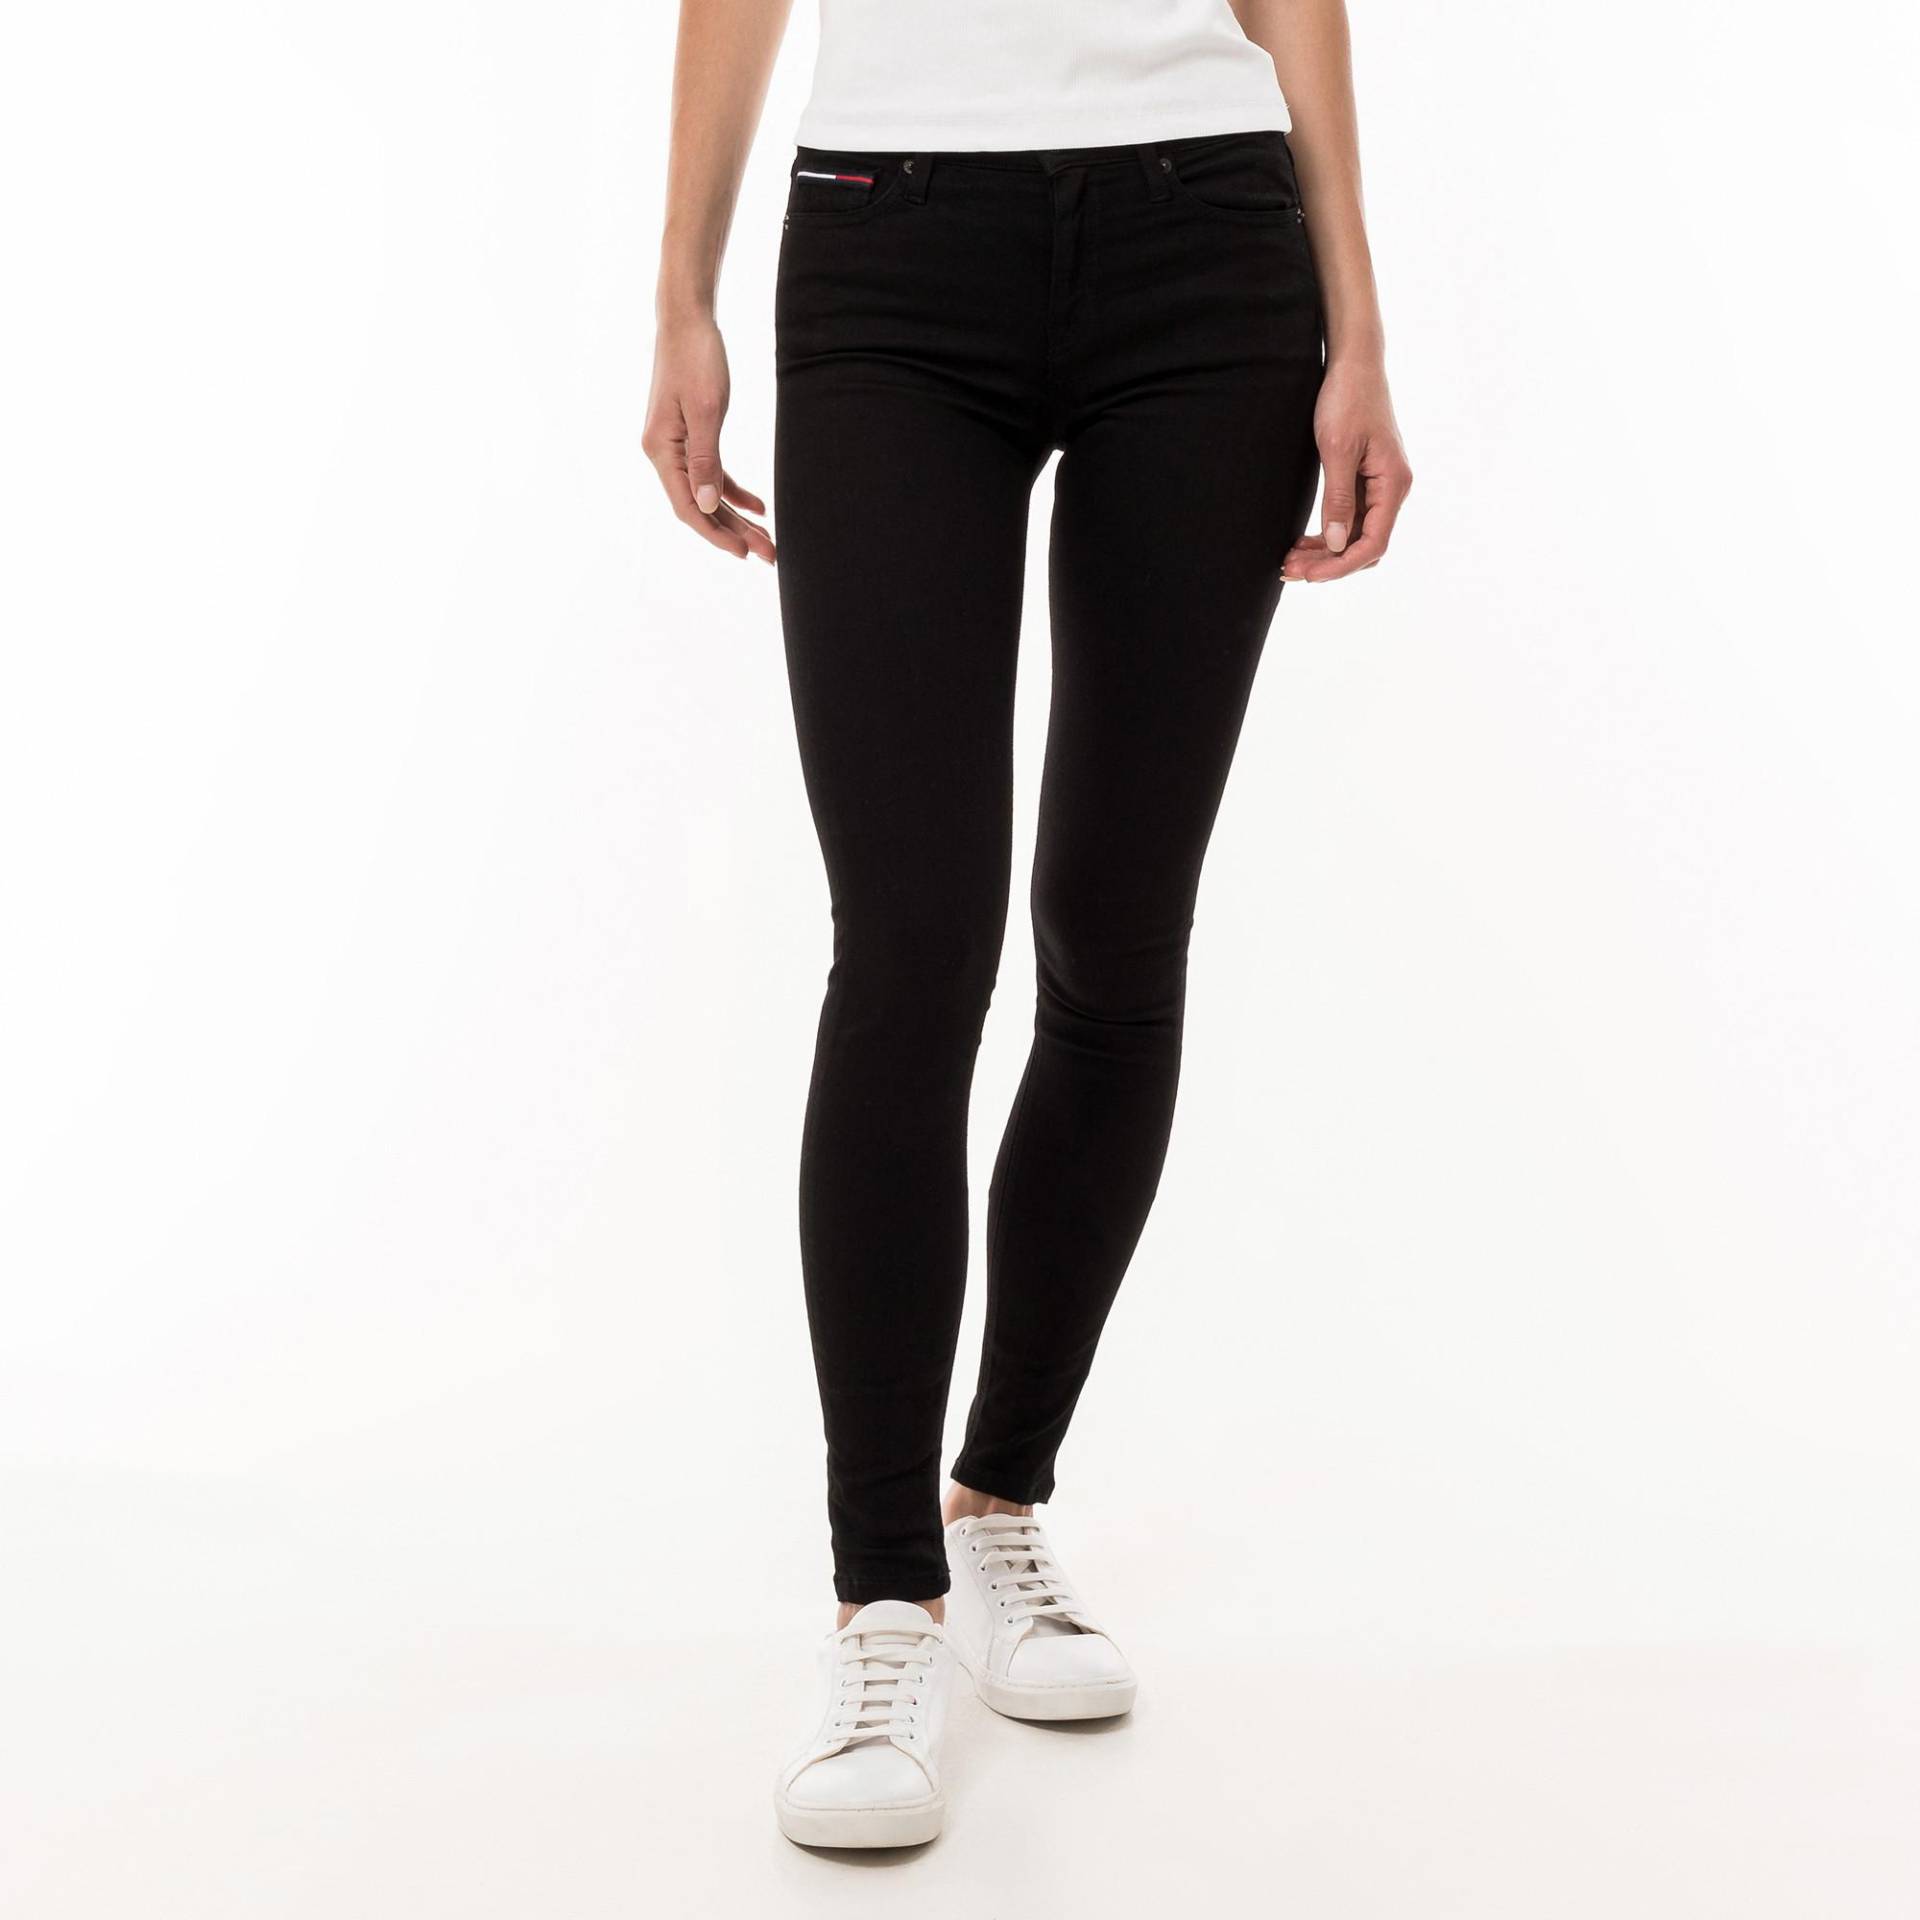 Jeans, Skinny Fit Damen Black L30/W24 von TOMMY JEANS